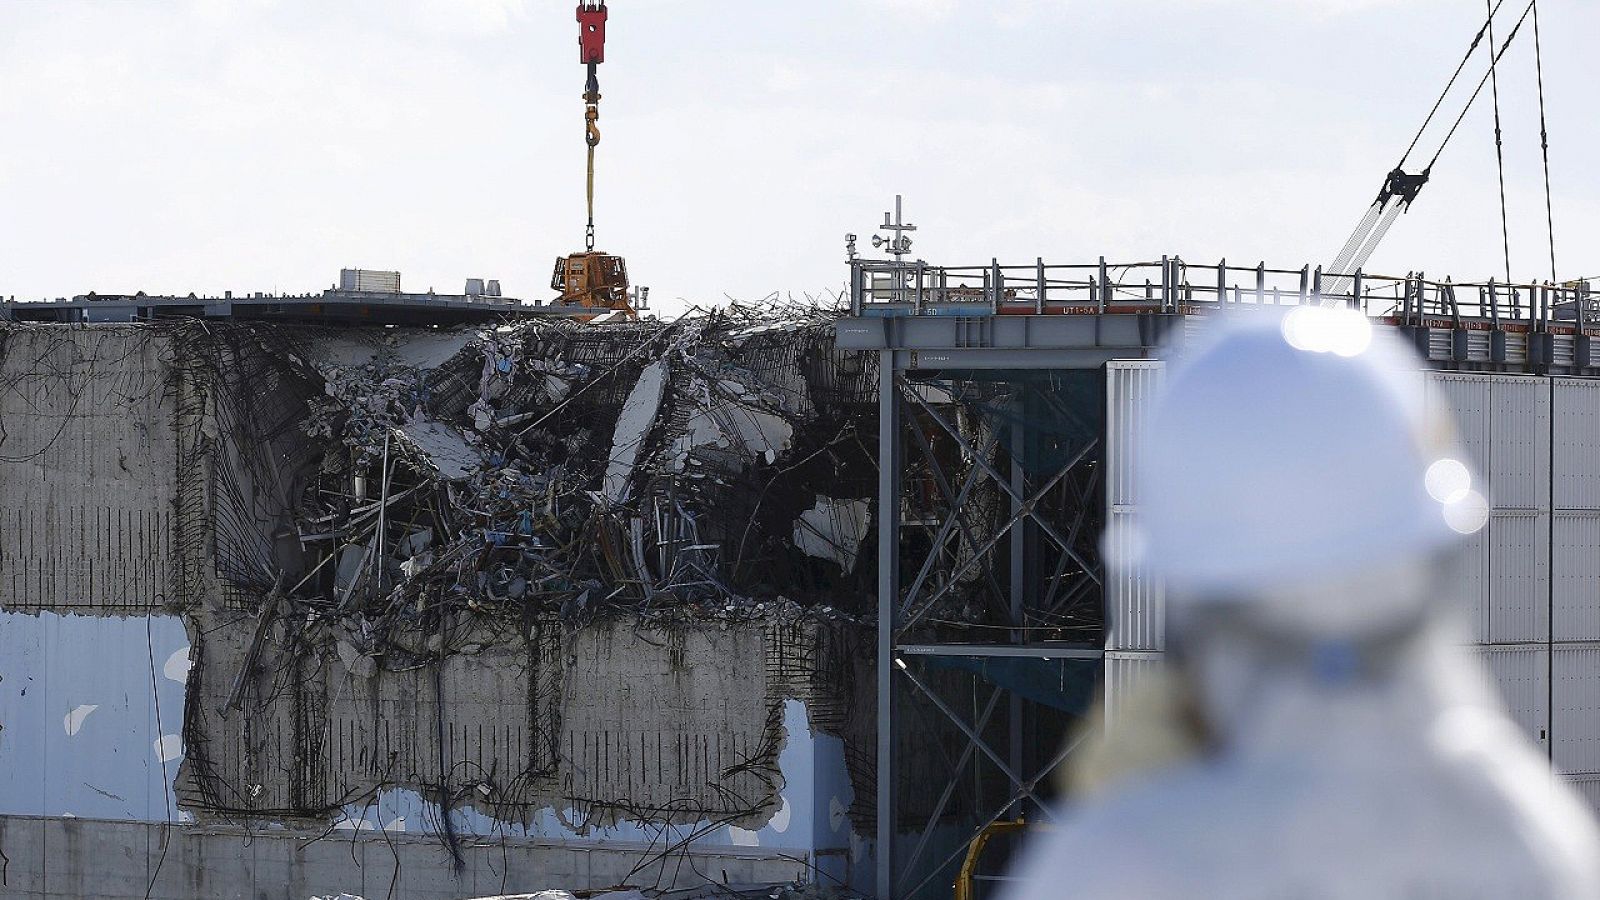 Imagen del reactor número 3 de la central de Fukushima Daiichi (Japón) dañado tras el terremoto y posterior tsunami. REUTERS/Toru Hanai/Files